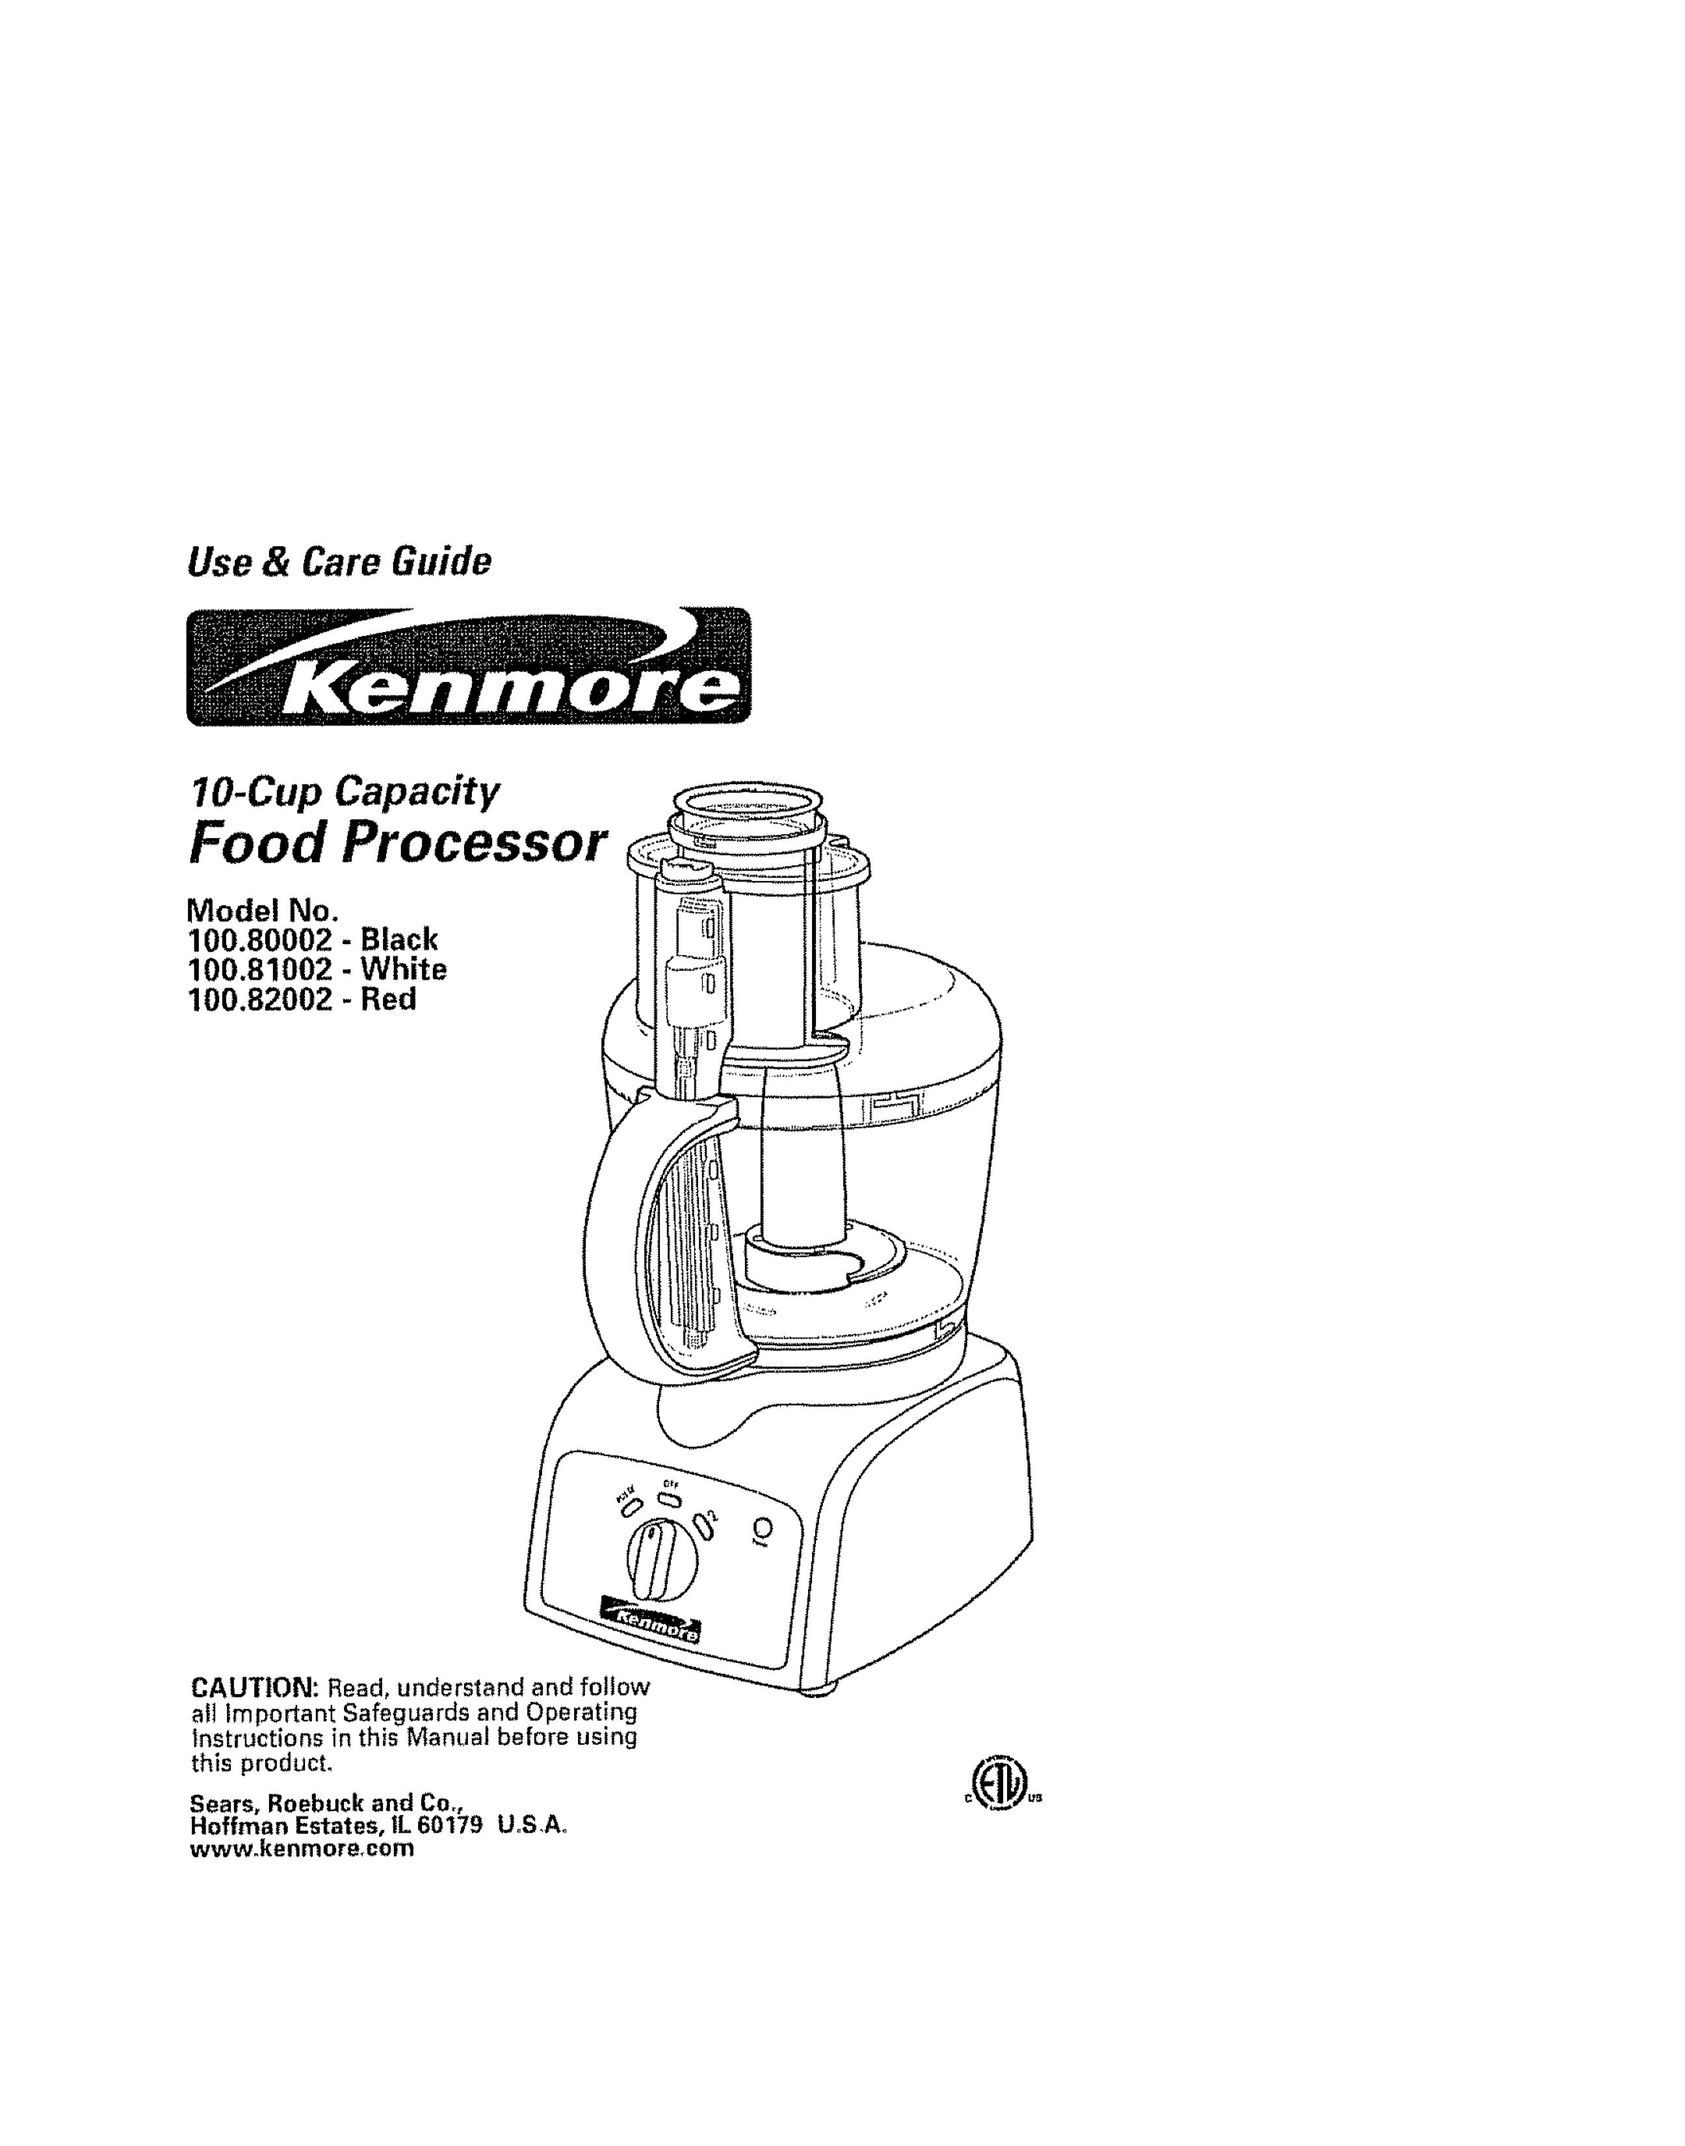 Kenmore 100.80002 Food Processor User Manual